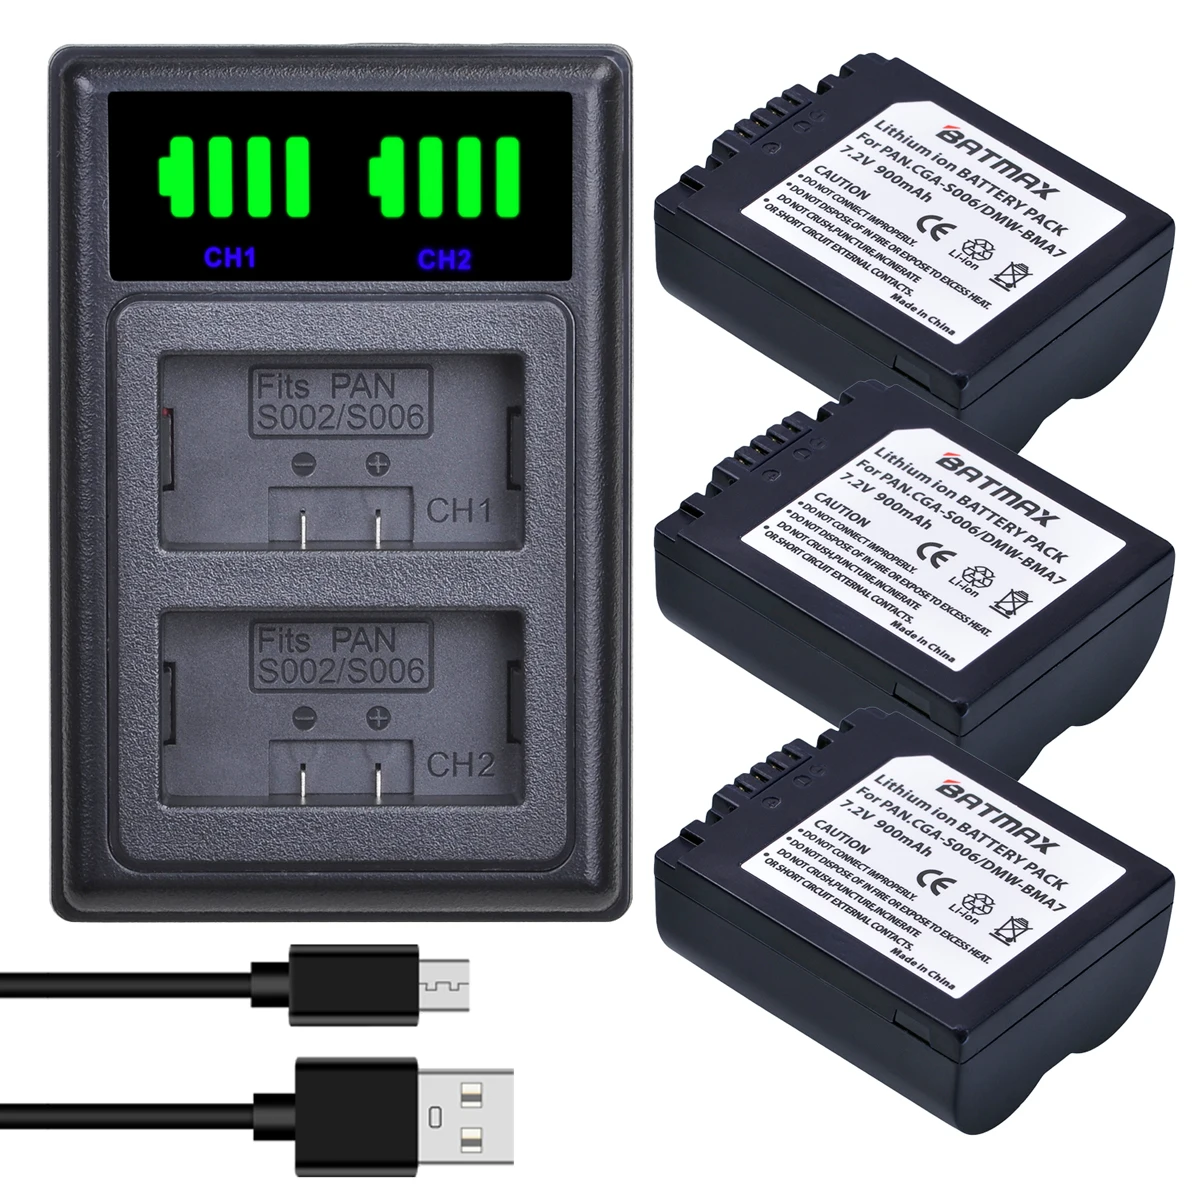 

Цифровой аккумулятор Batmax CGA-S006 CGR S006E S006 + двойное зарядное устройство USB со светодиодной подсветкой для камеры Panasonic DMC-FZ7 FZ30 FZ50 FZ28 FZ18 TZ8 FZ8